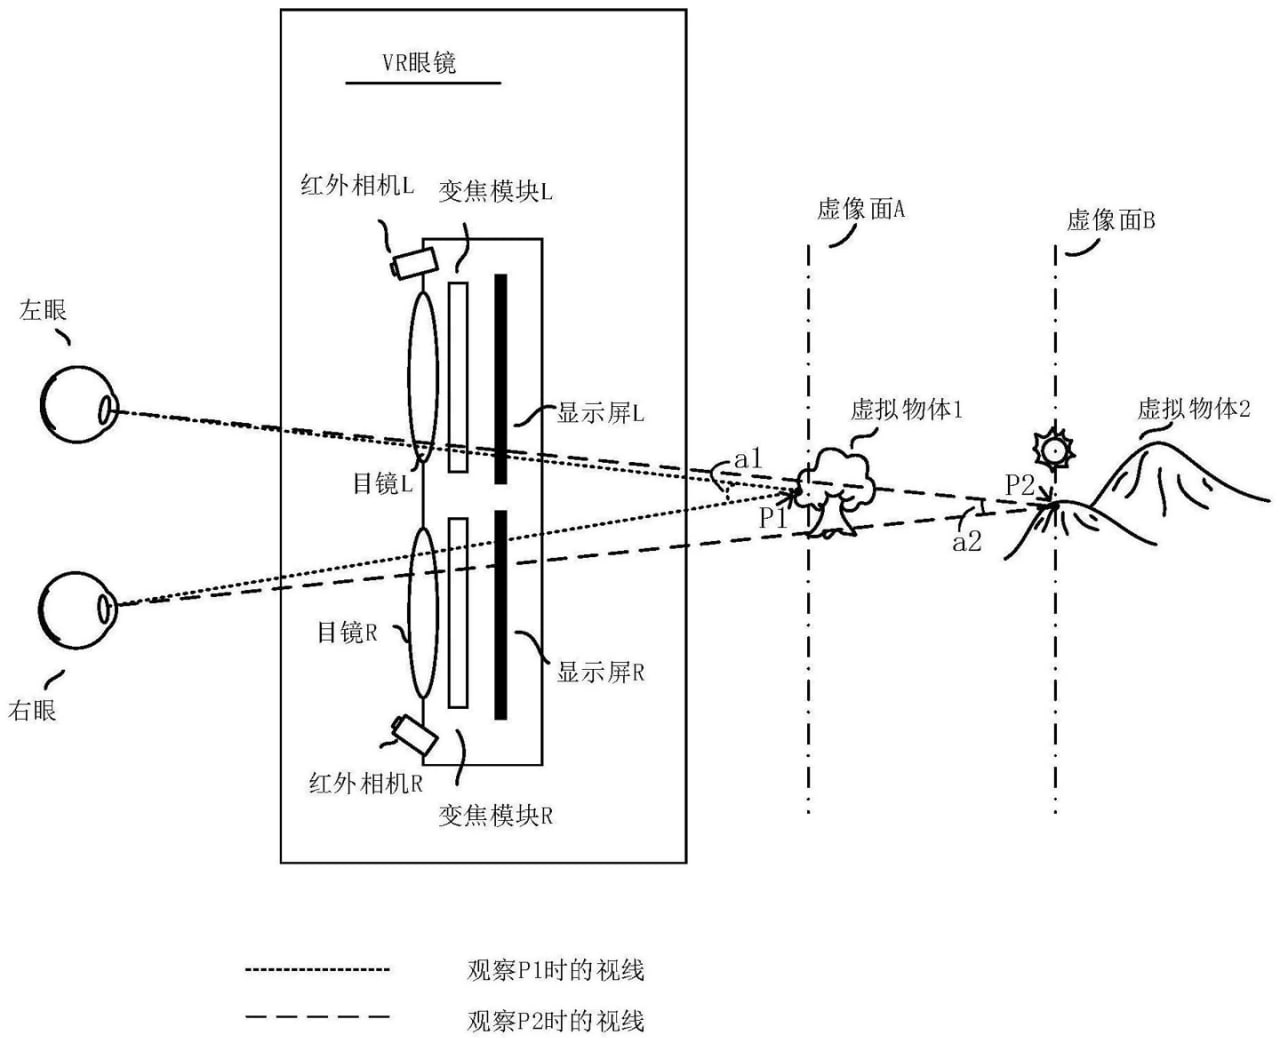 Huawei virtual display patent